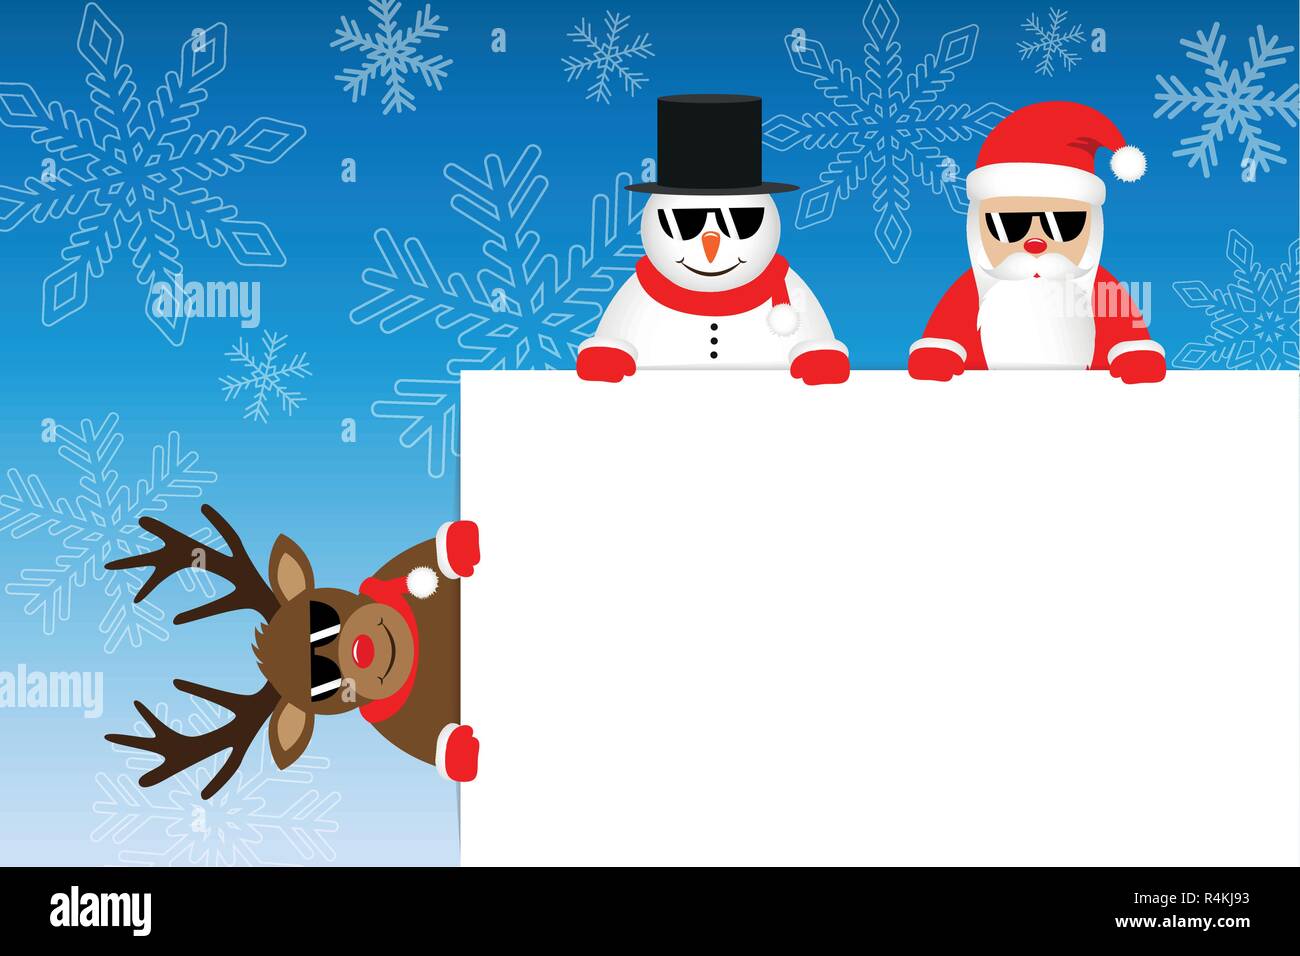 Weihnachten cartoons Rentier Weihnachtsmann und Schneemann mit weißen Bekanntmachung und im Winter verschneite Hintergrund Vektor-illustration EPS 10. Stock Vektor